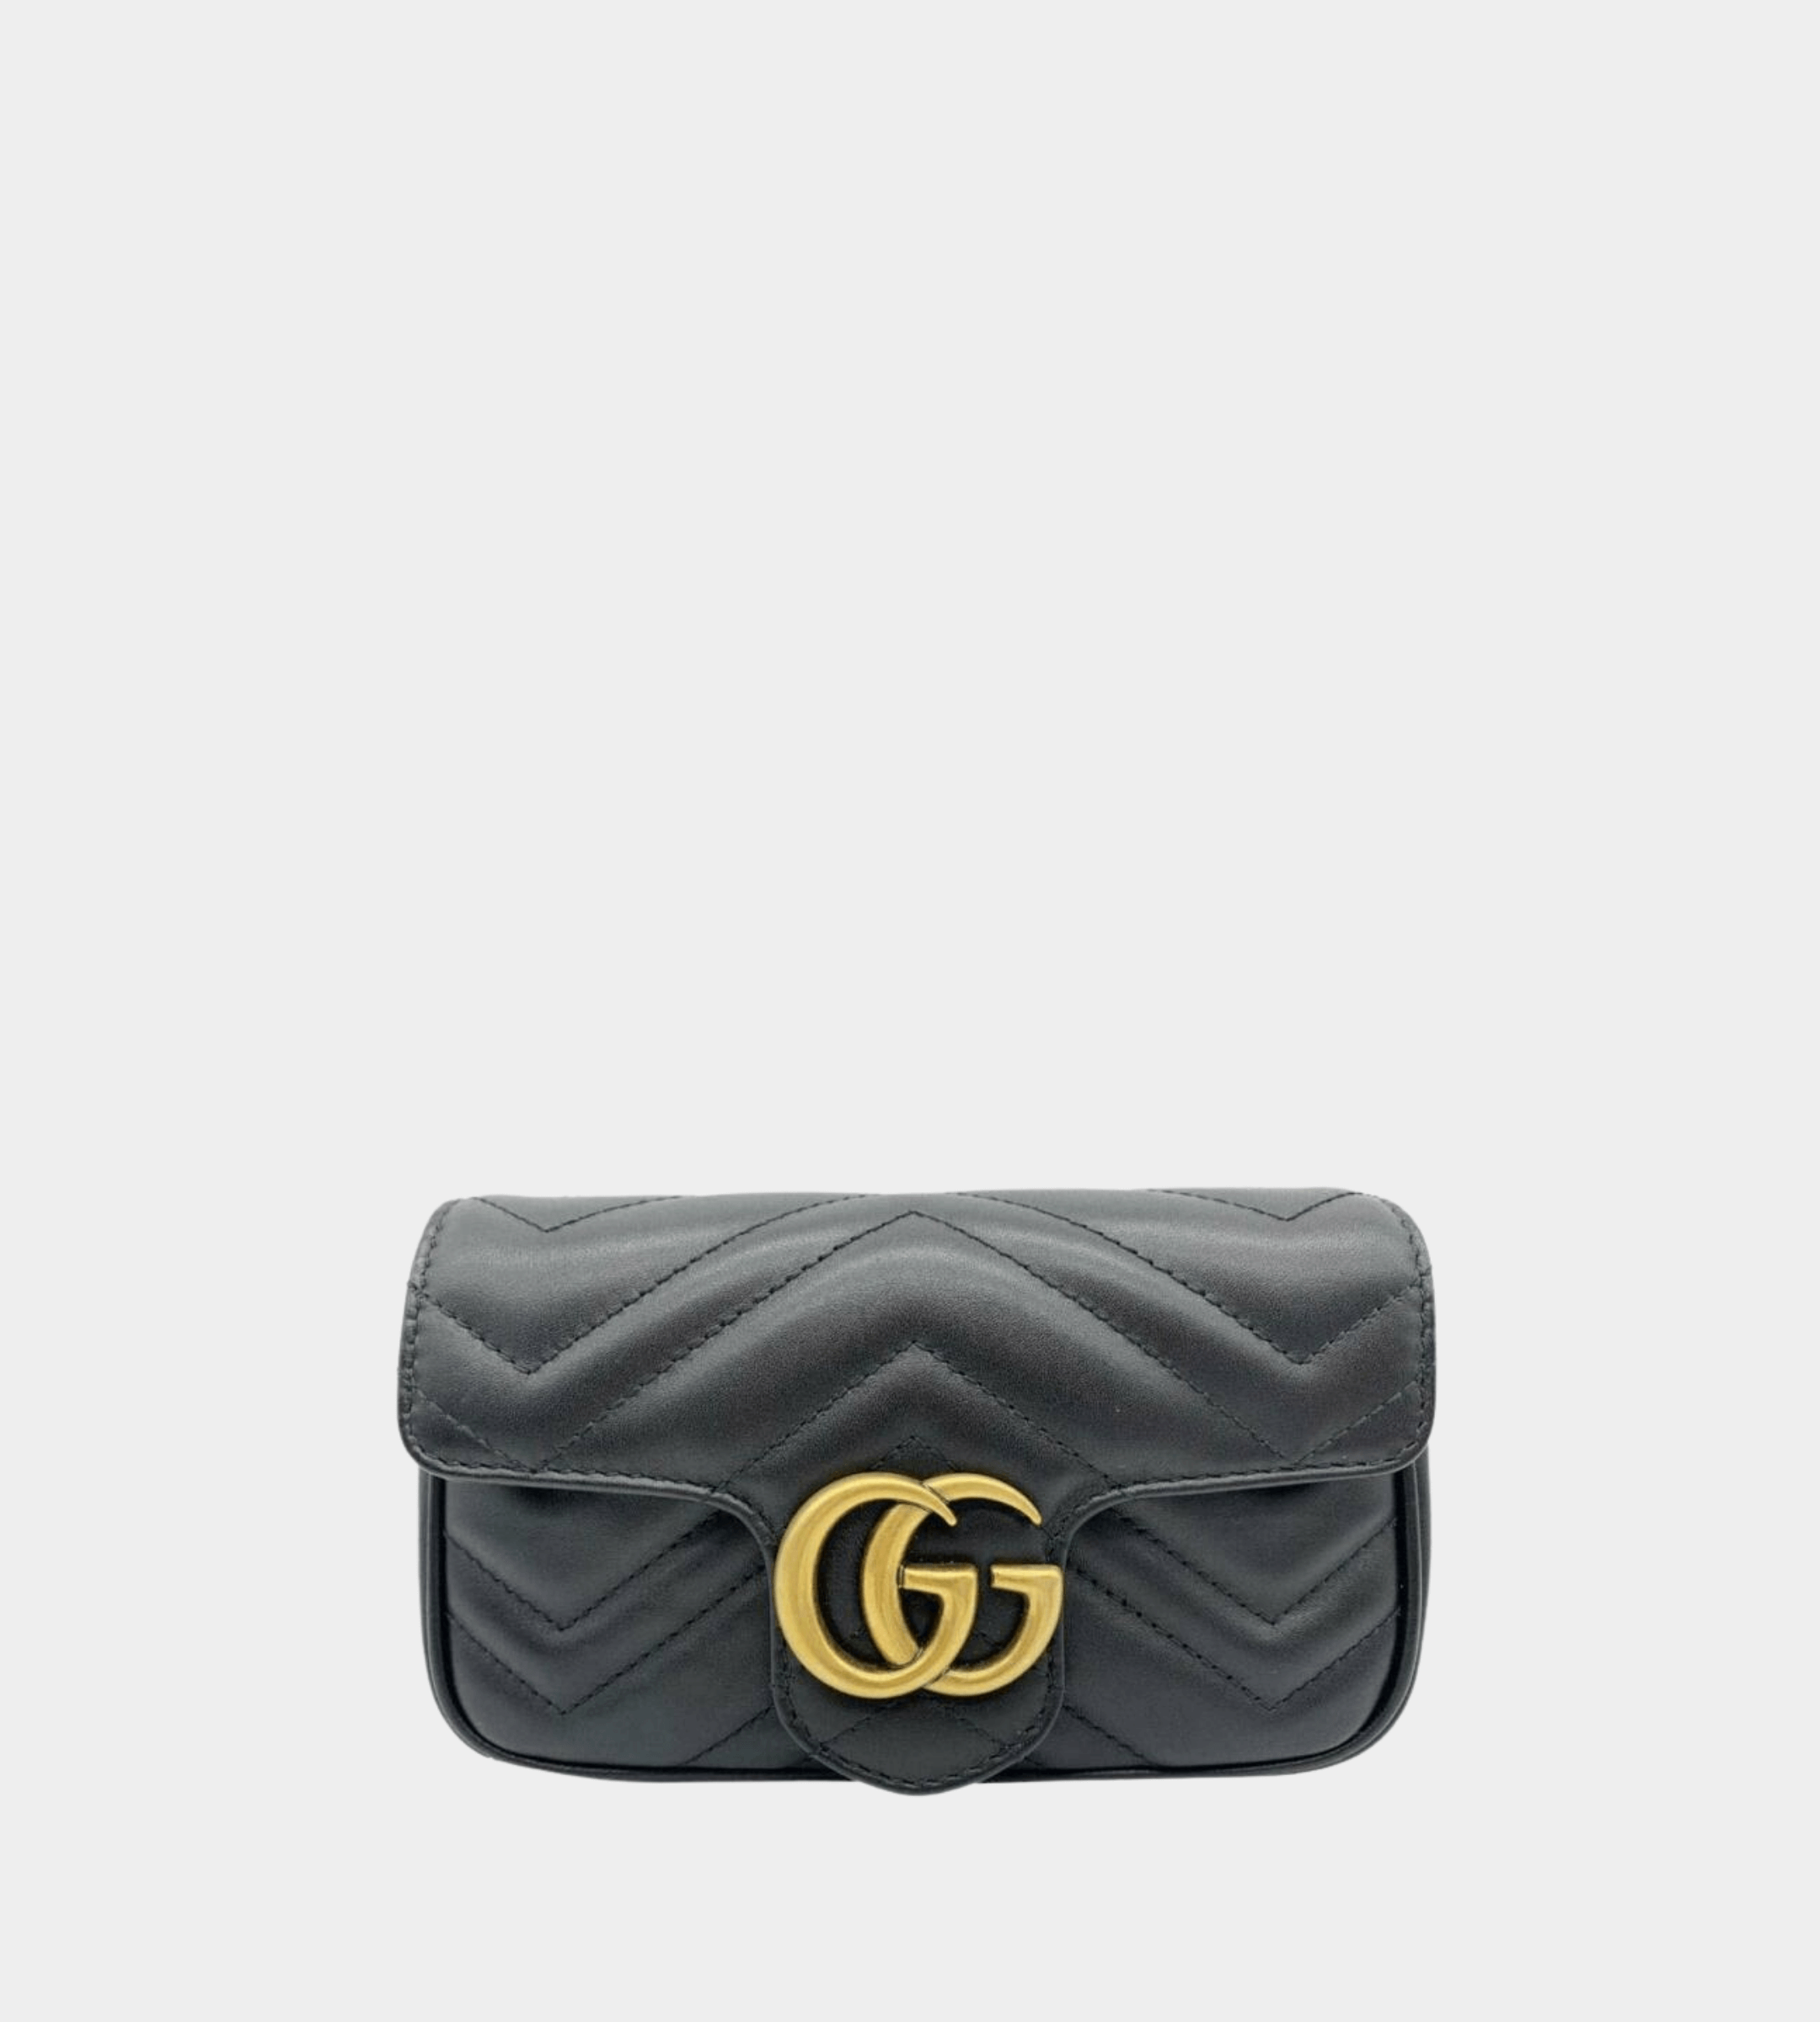 Gucci Marmont Matelasse Super Mini Bag 2 Year Review